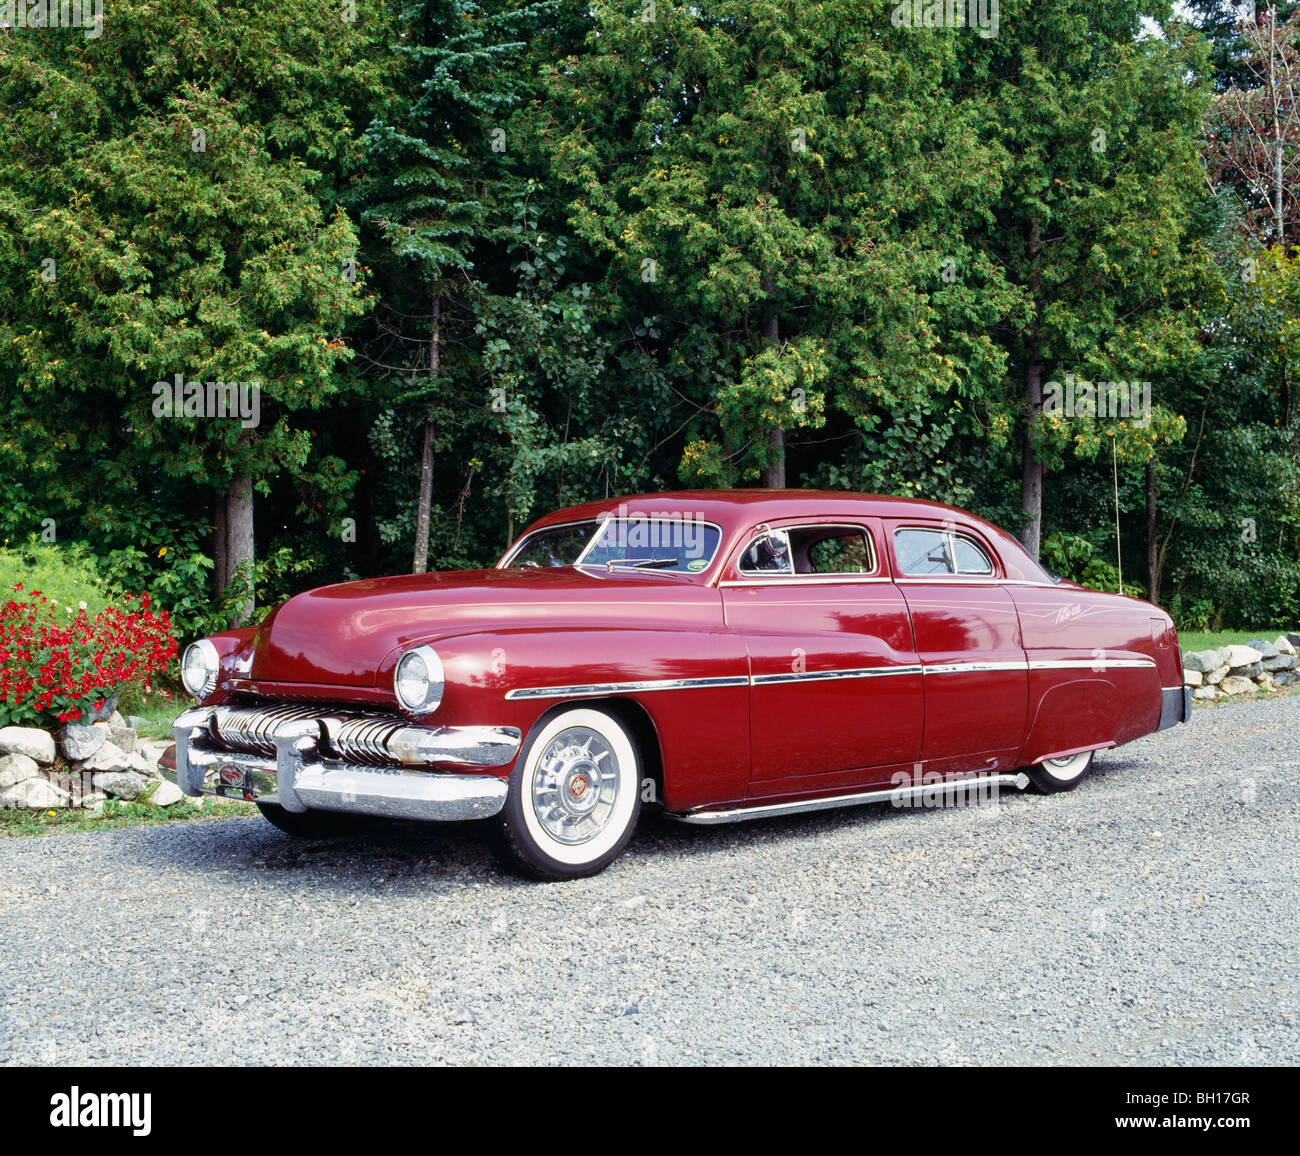 Vintage 1951 Mercury car, Waterloo, Quebec, Canada Stock Photo